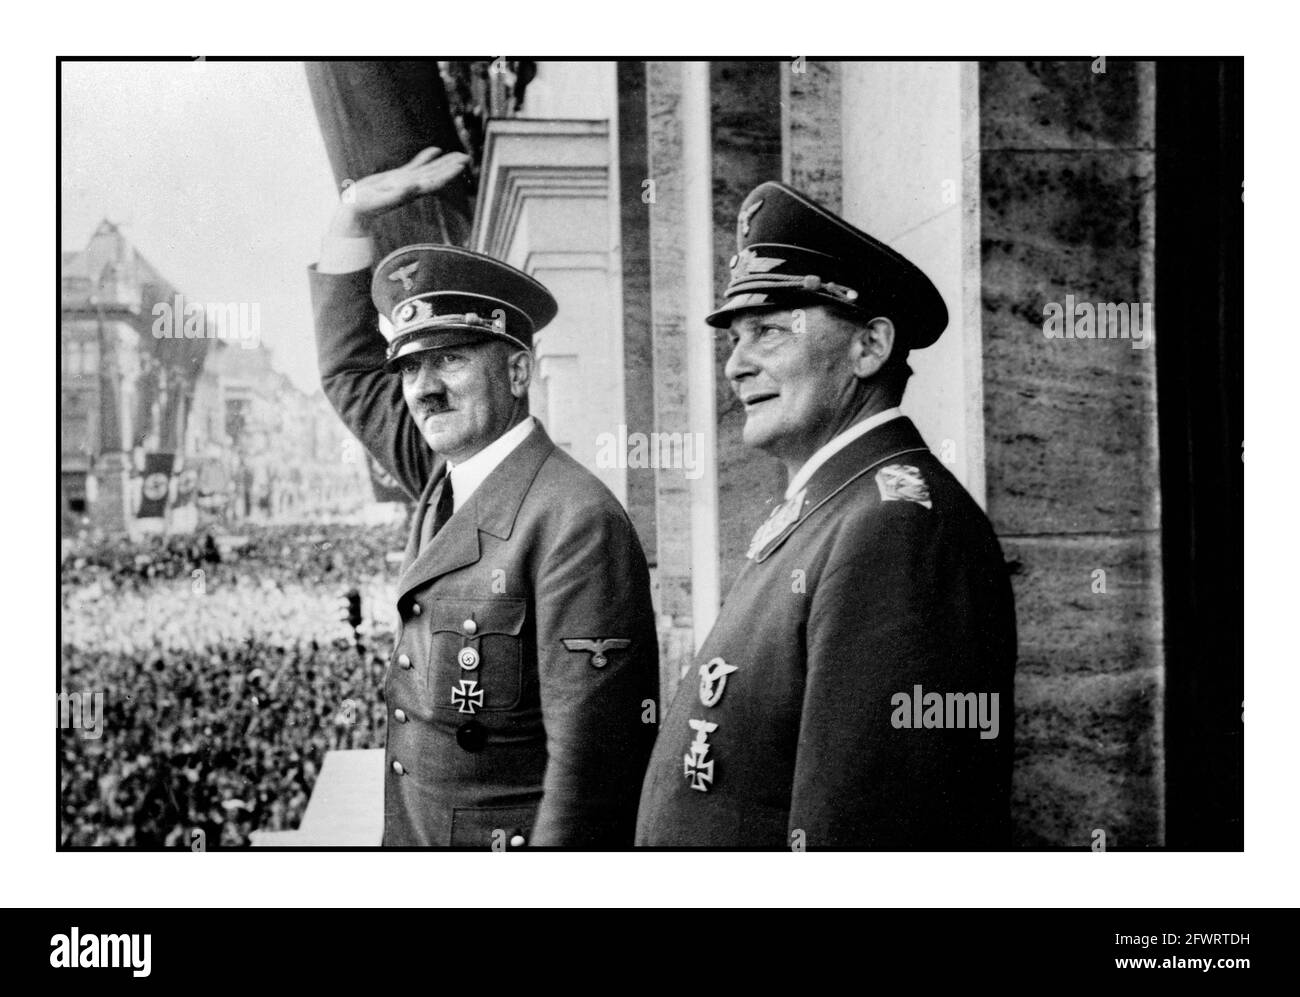 FRANKREICH NAZI-BESETZUNG Jahrgang 2 Adolf Hitler auf dem Höhepunkt seiner charismatischen Macht: Mit Hermann Göring auf dem Balkon bei einer Siegesparade in Berlin, Juli 1940, nach der erfolgreichen Invasion und Besetzung Frankreichs Stockfoto